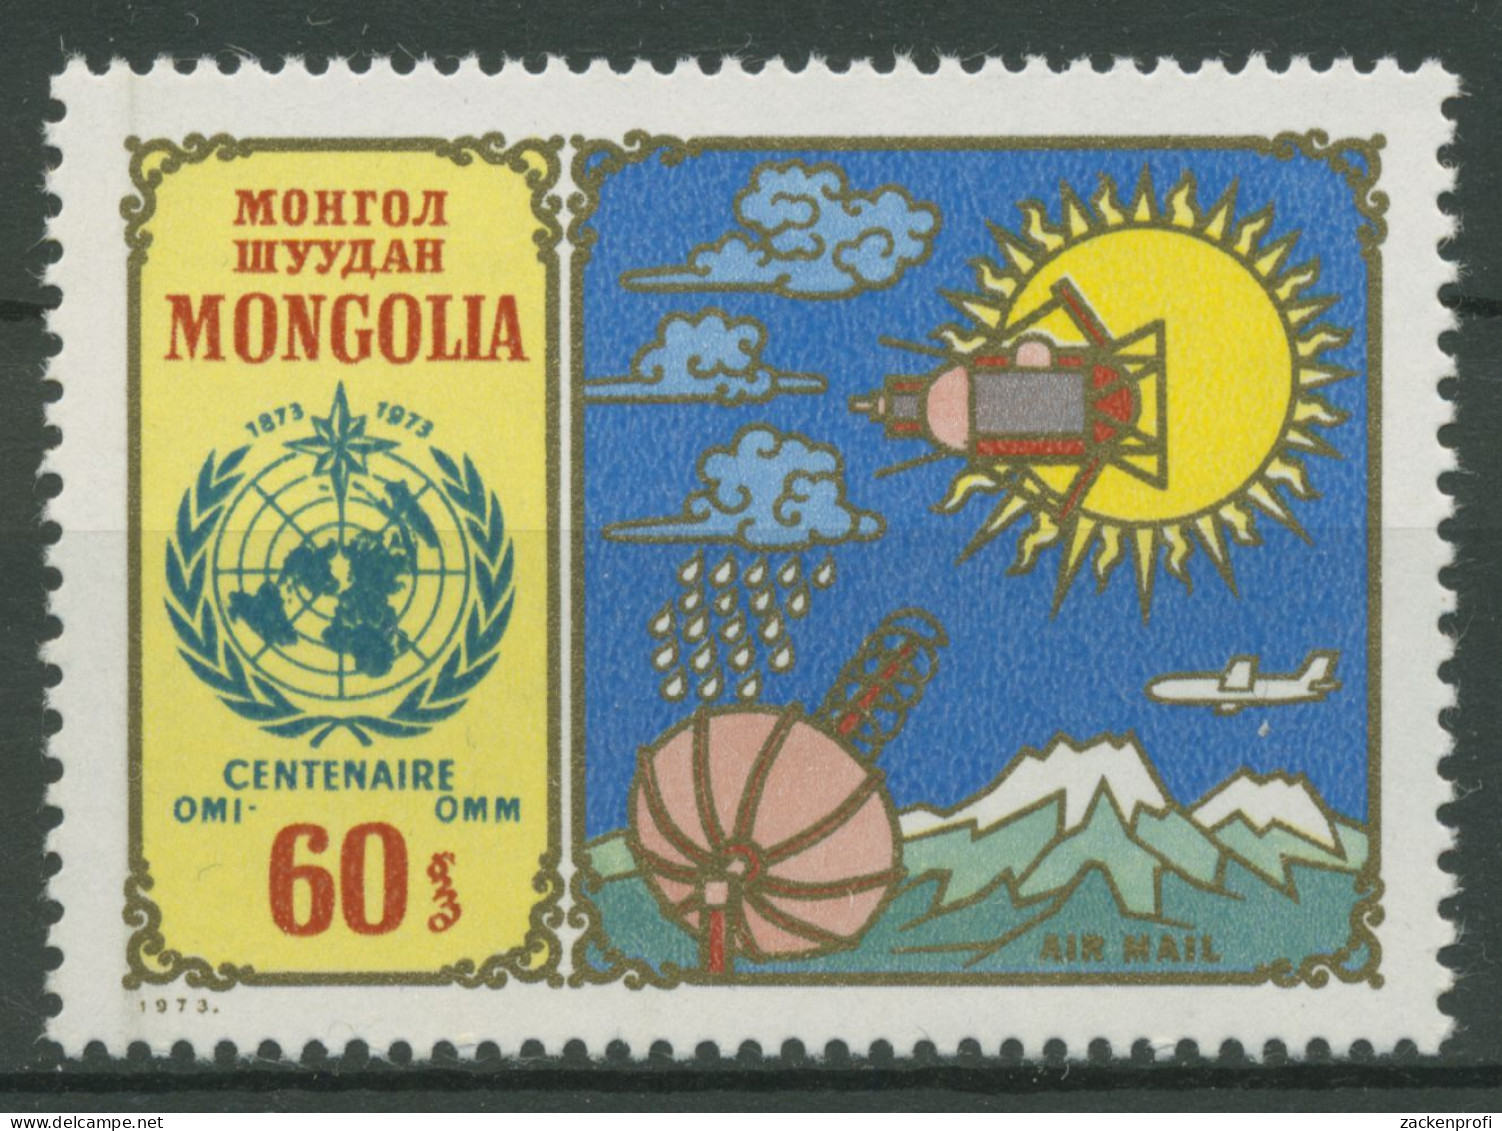 Mongolei 1973 Meteorologische Zusammenarbeit 773 Postfrisch - Mongolie